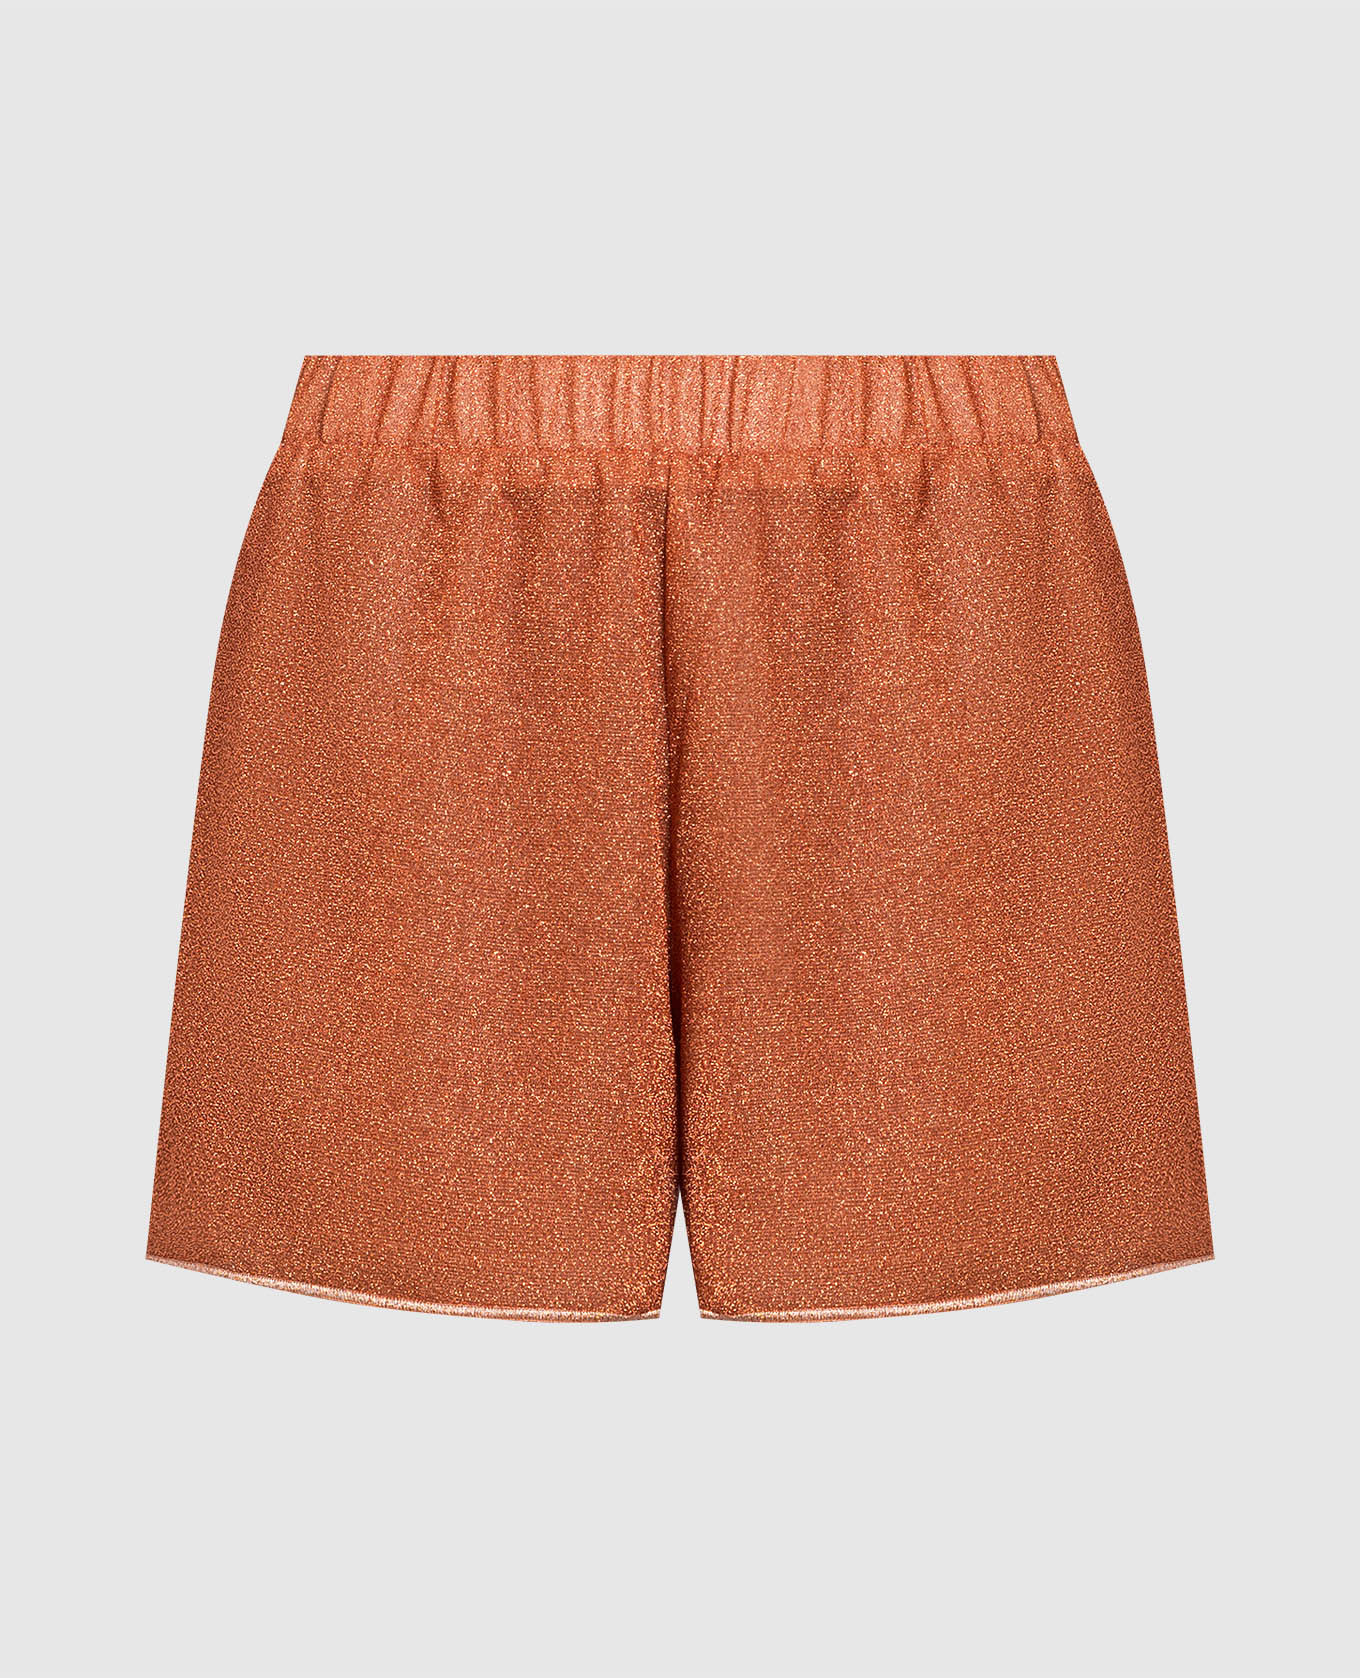 Orange shorts HS22 Lumiere with lurex